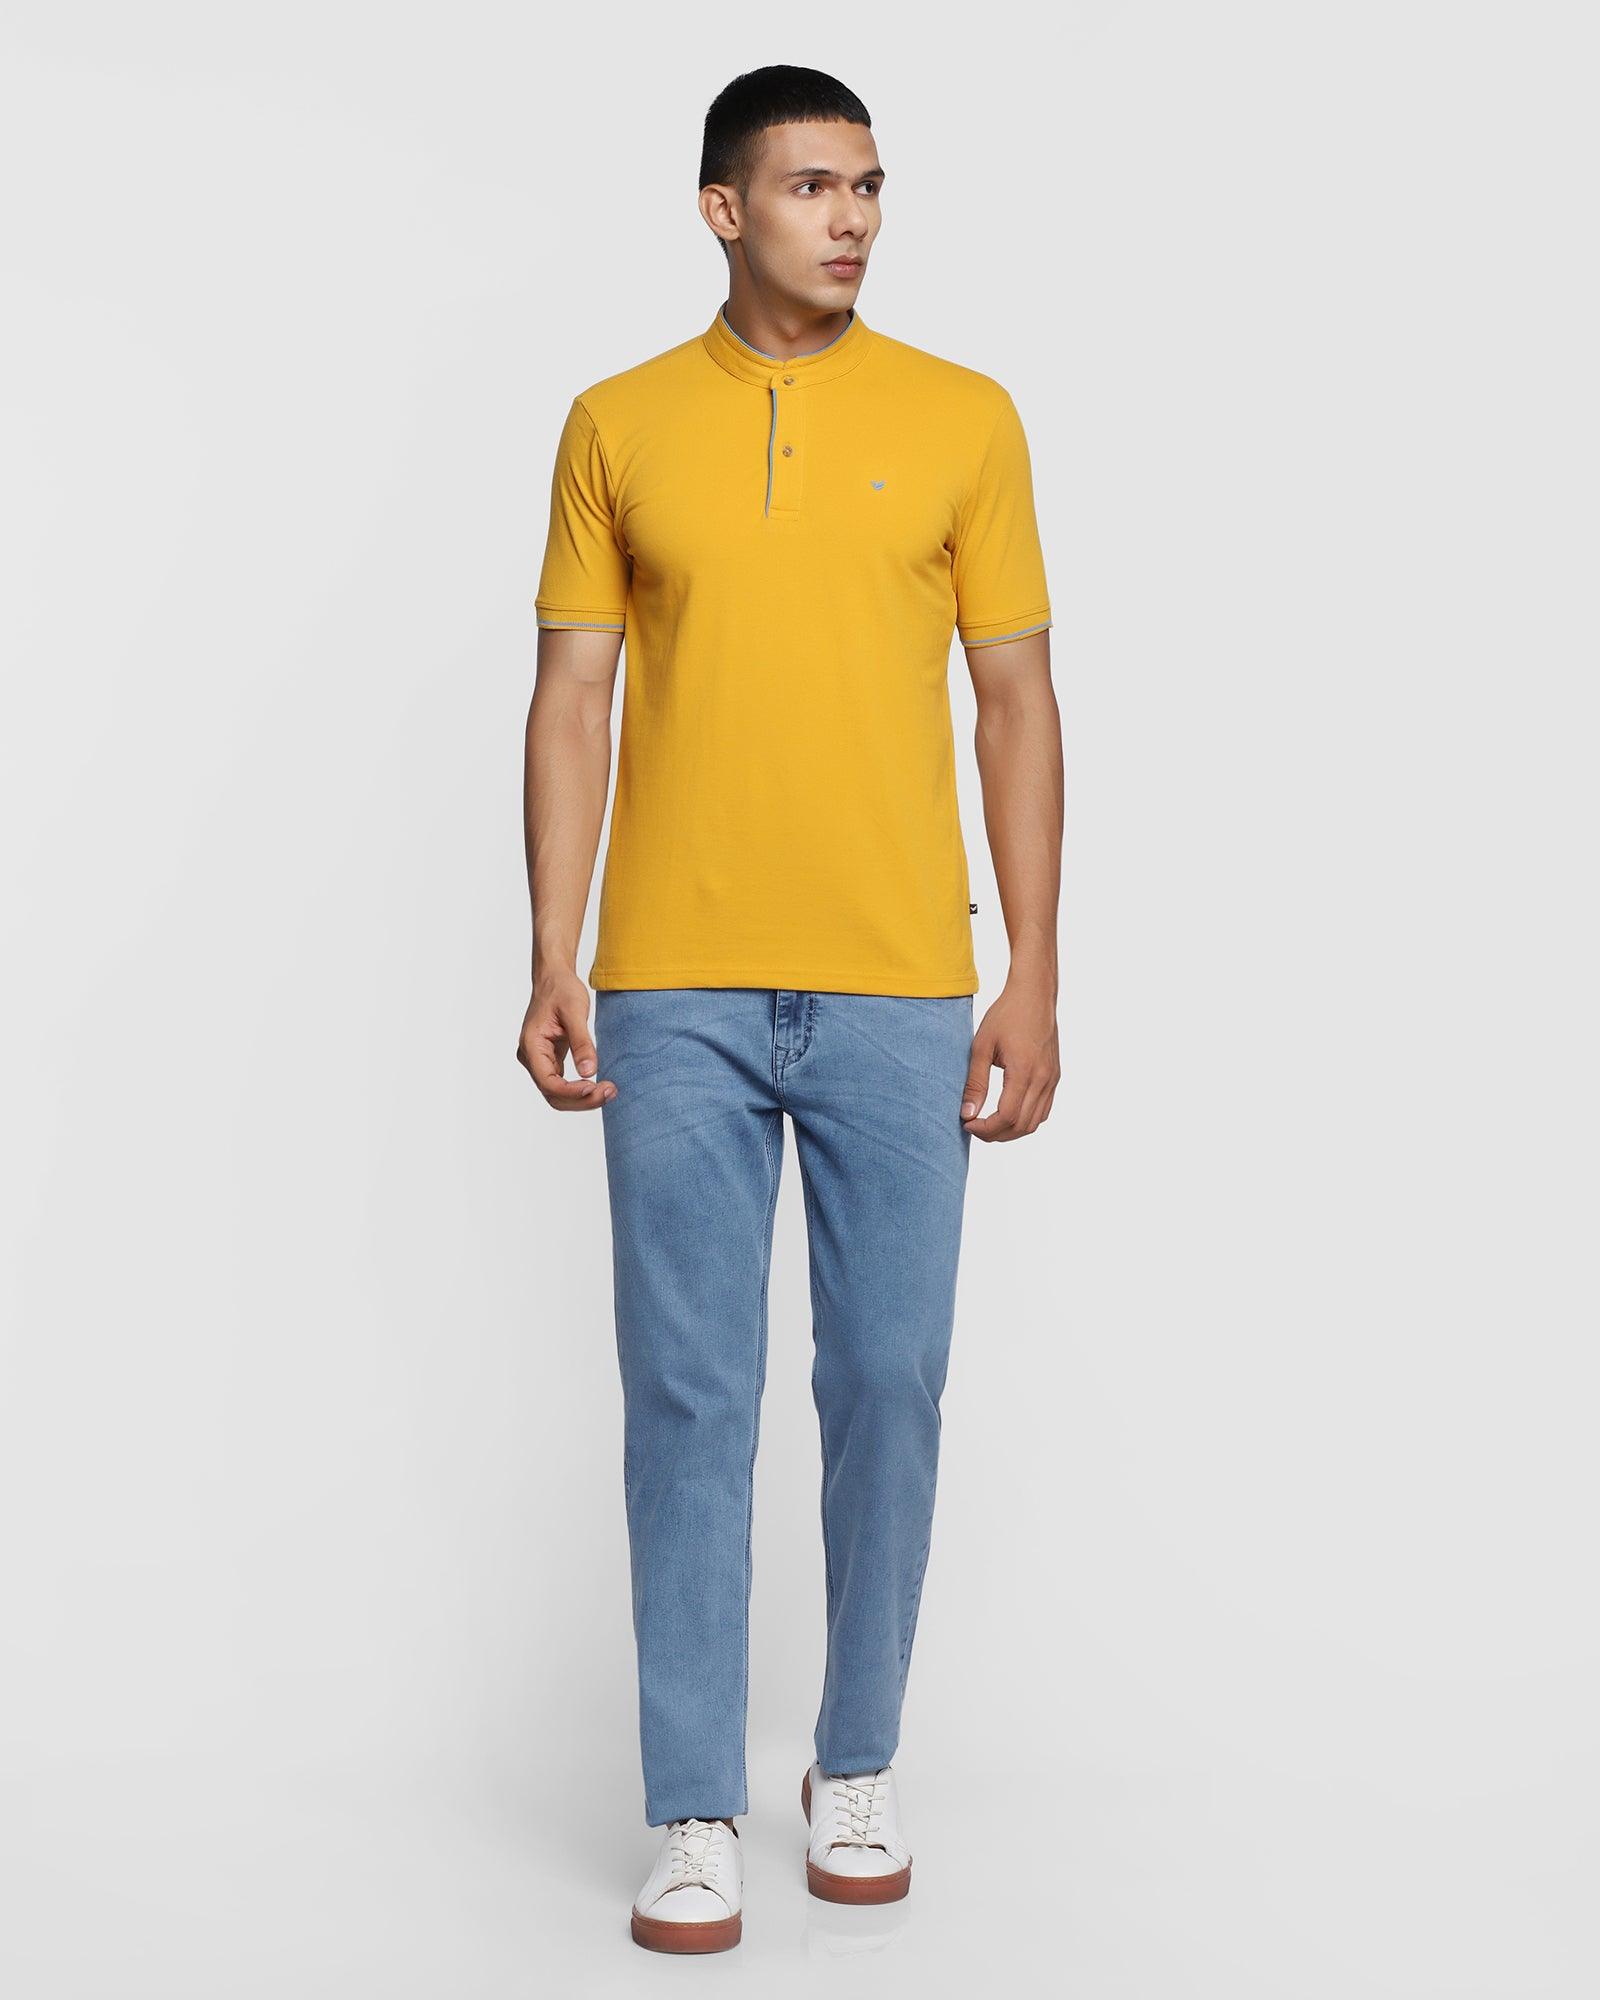 Mandarin Collar Ochre Solid T Shirt - Dom